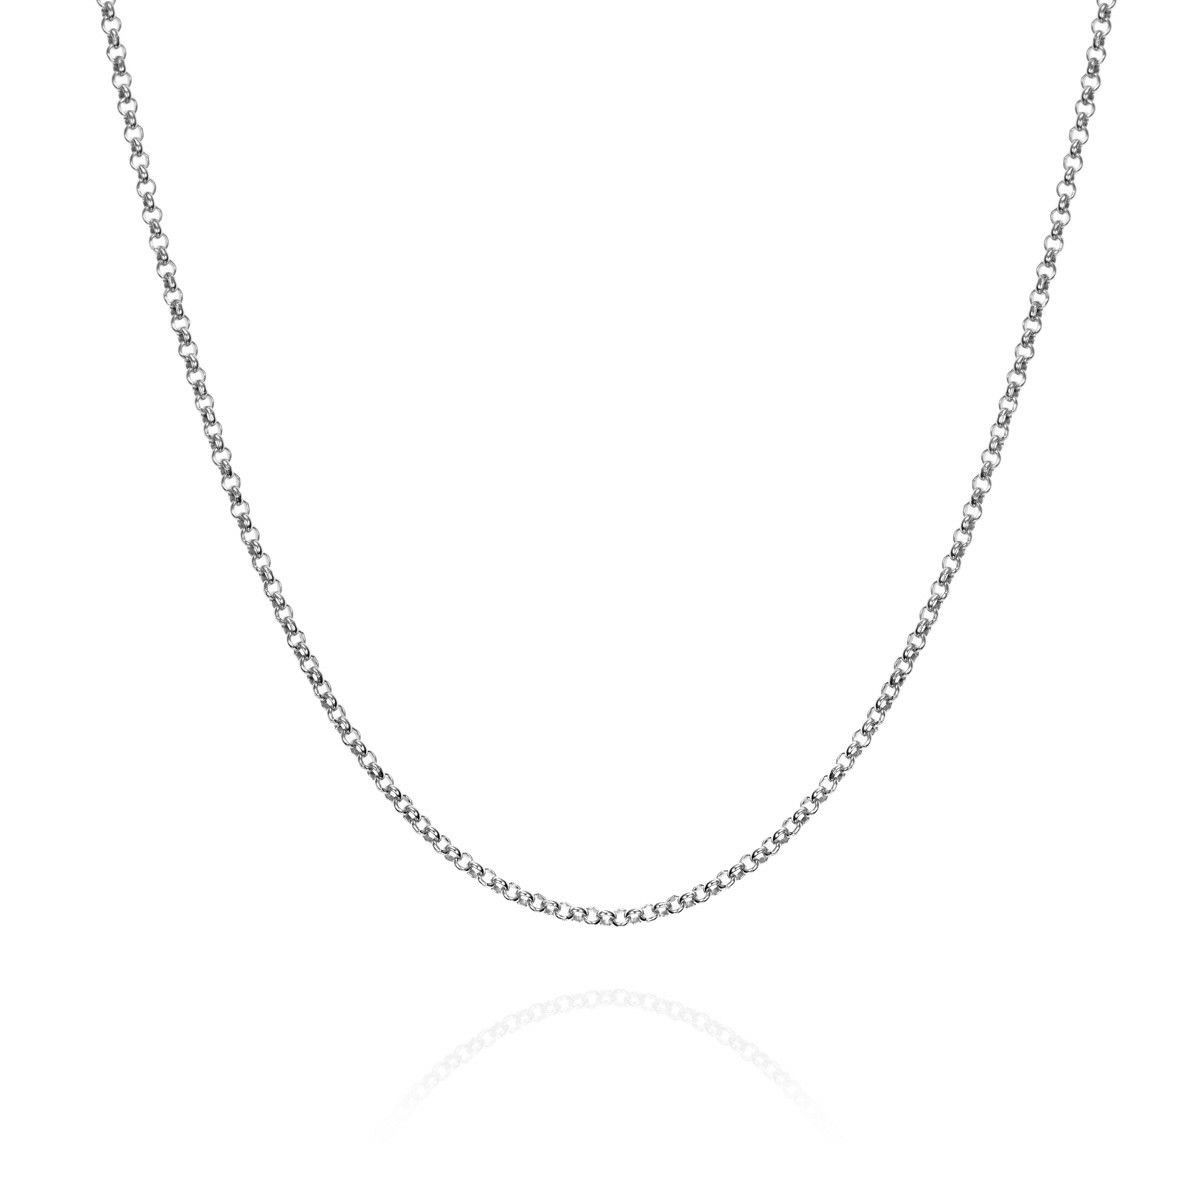 Chain in Silver 40 cm.